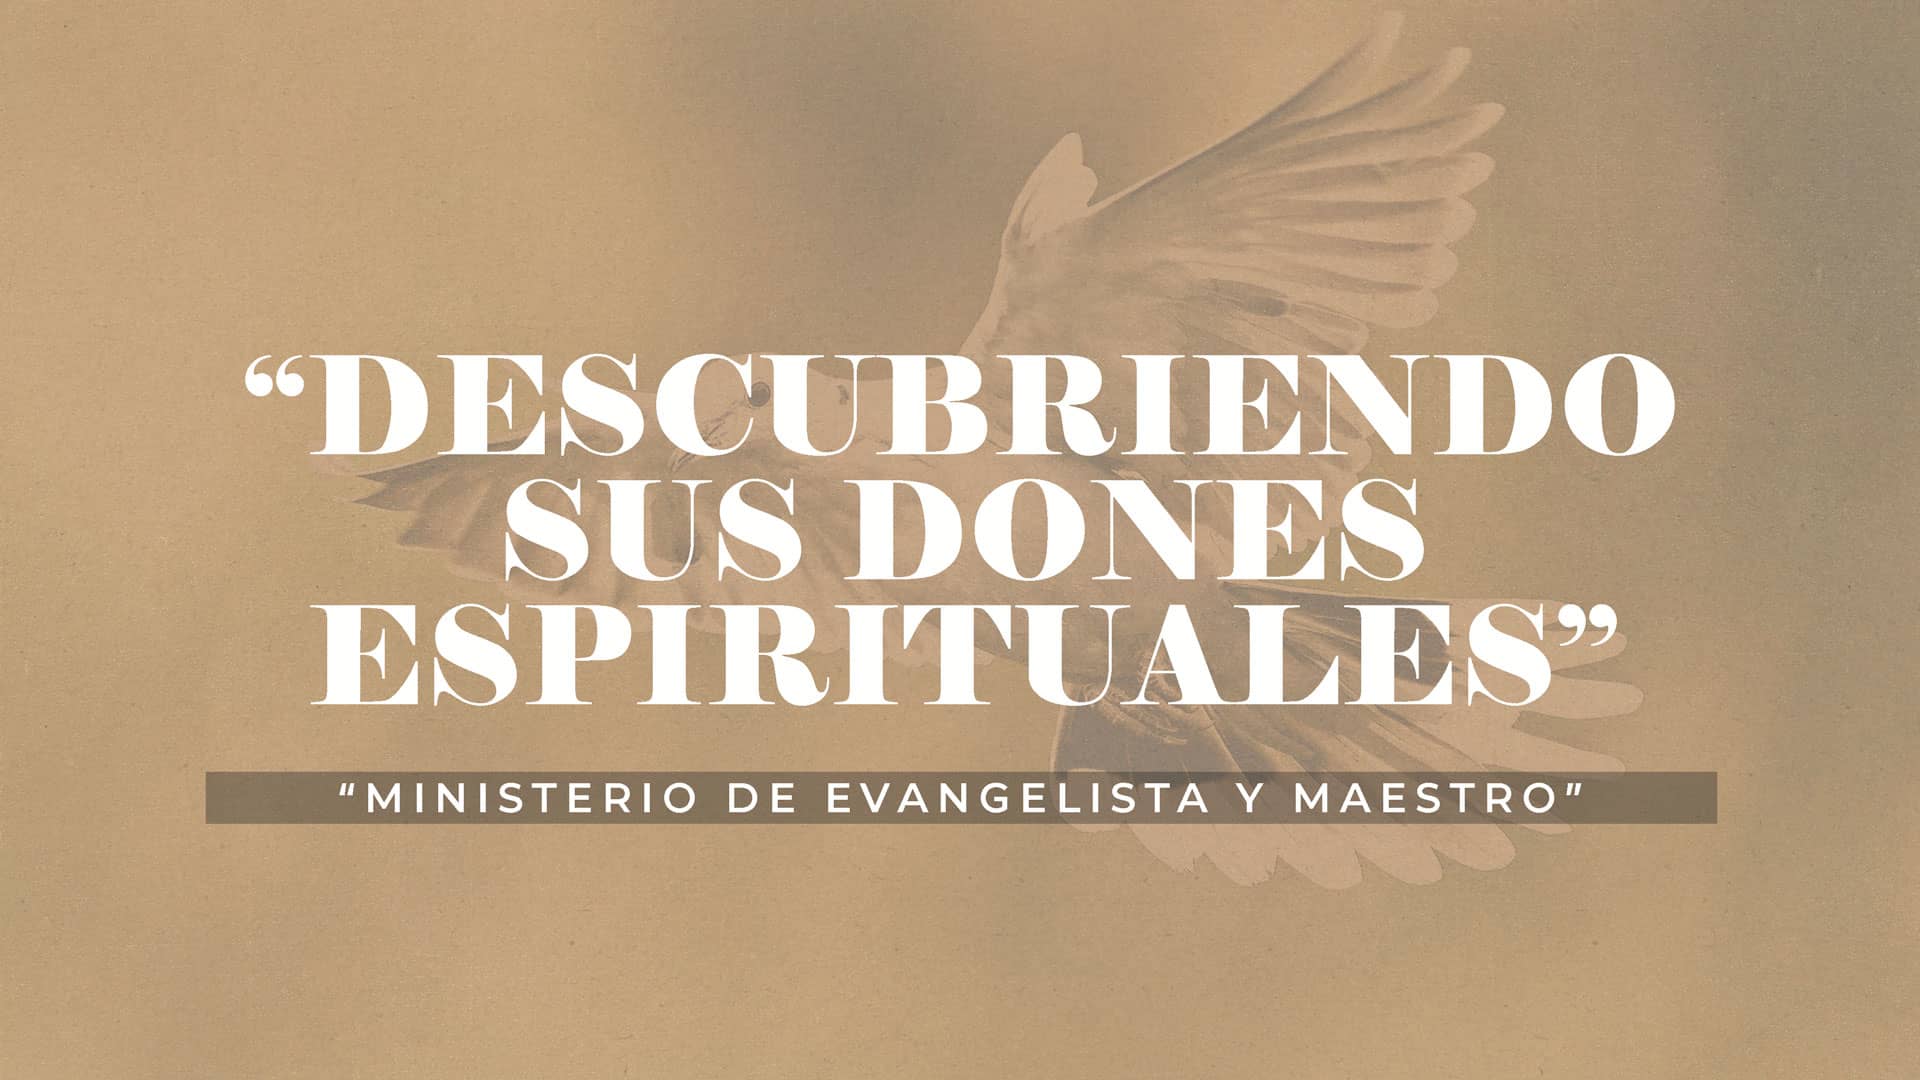 10 - Ministerio de Evangelista y Maestro / 22 de enero de 2022 on Vimeo